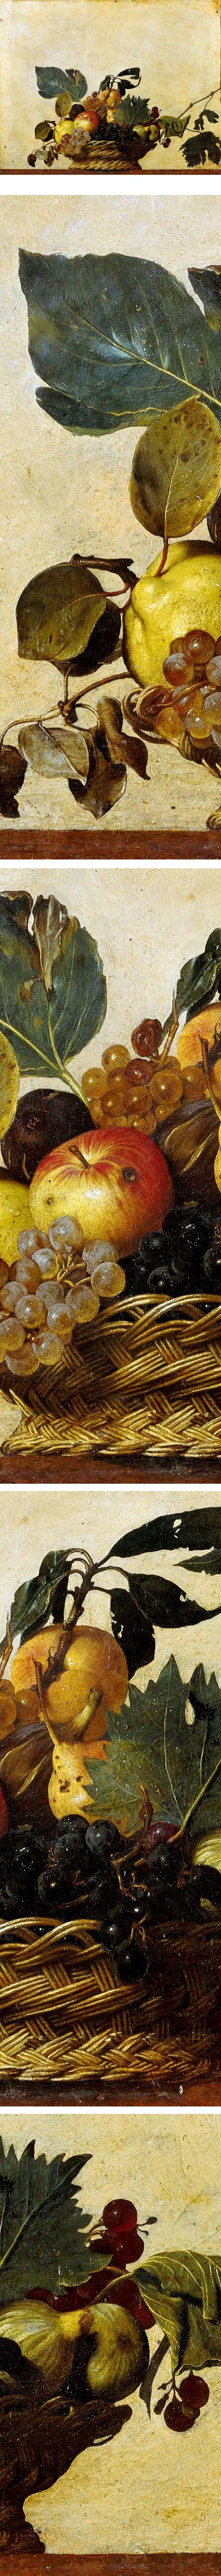 Basket of Fruit, Caravaggio (Michelangelo Merisi da Caravaggio)